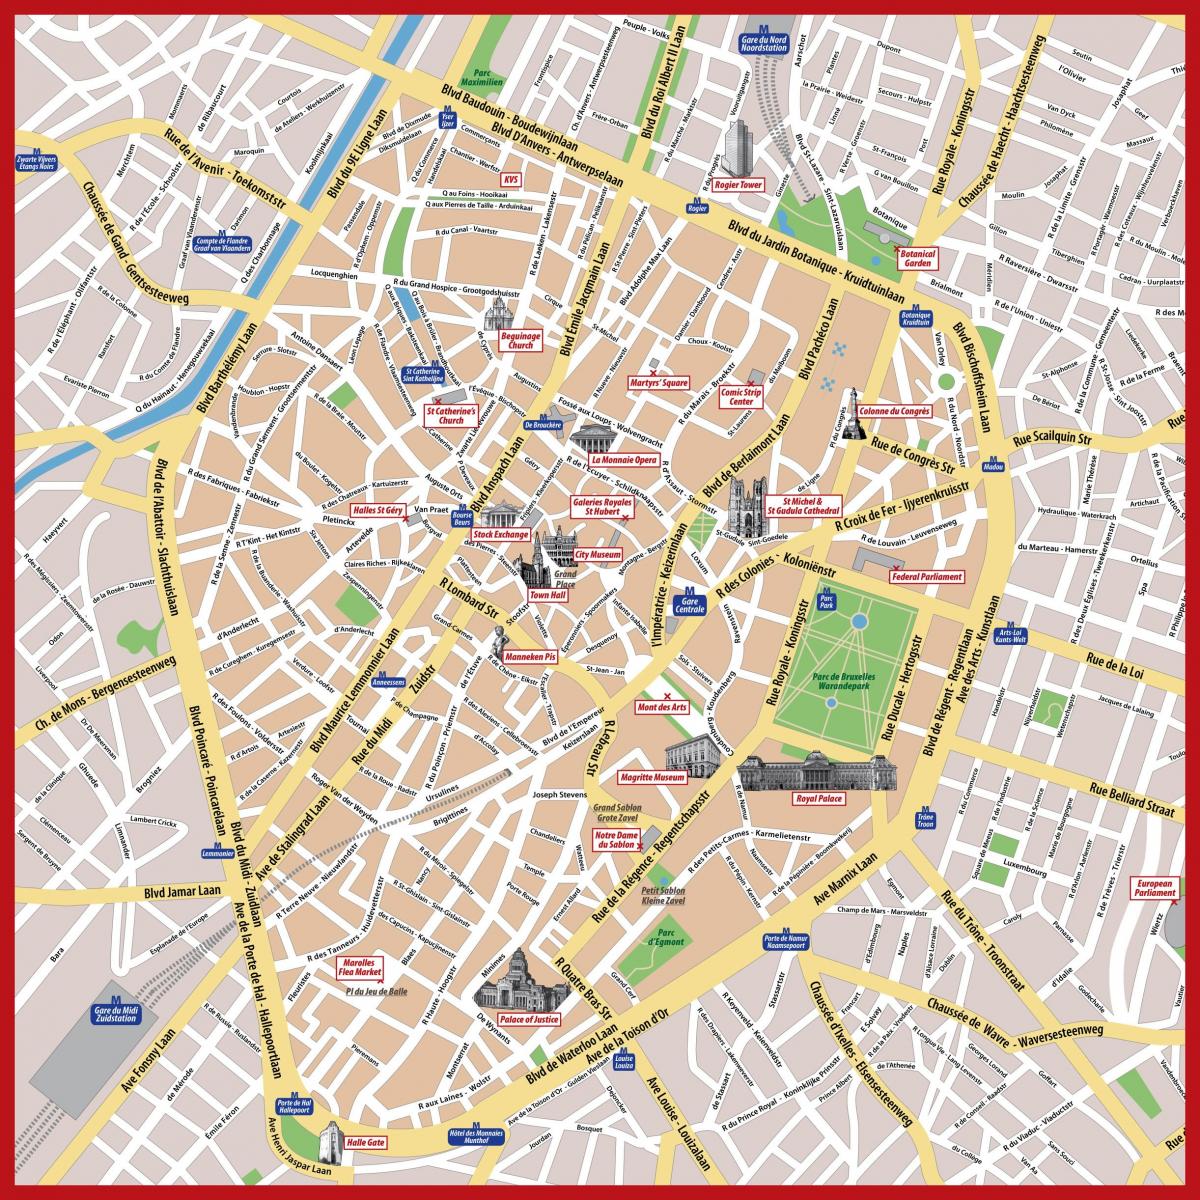 Brusel pěší turistické mapy